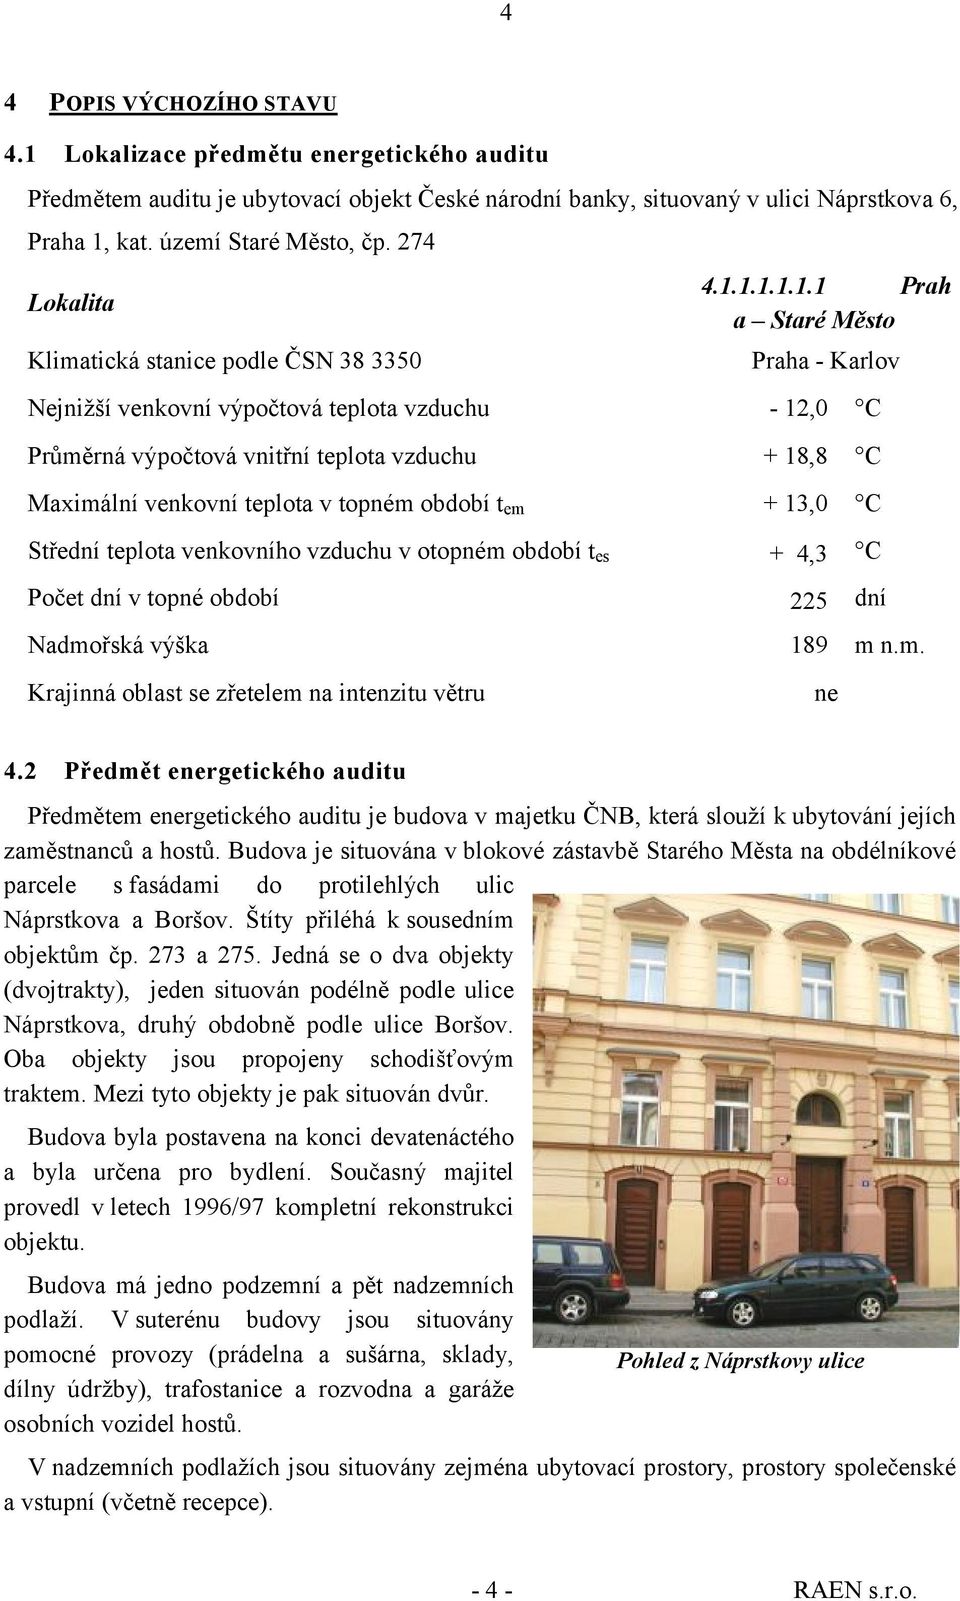 1.1.1.1.1 Prah a Staré Město Lokalita Klimatická stanice podle ČSN 38 3350 Praha - Karlov Nejnižší venkovní výpočtová teplota vzduchu - 12,0 Průměrná výpočtová vnitřní teplota vzduchu + 18,8